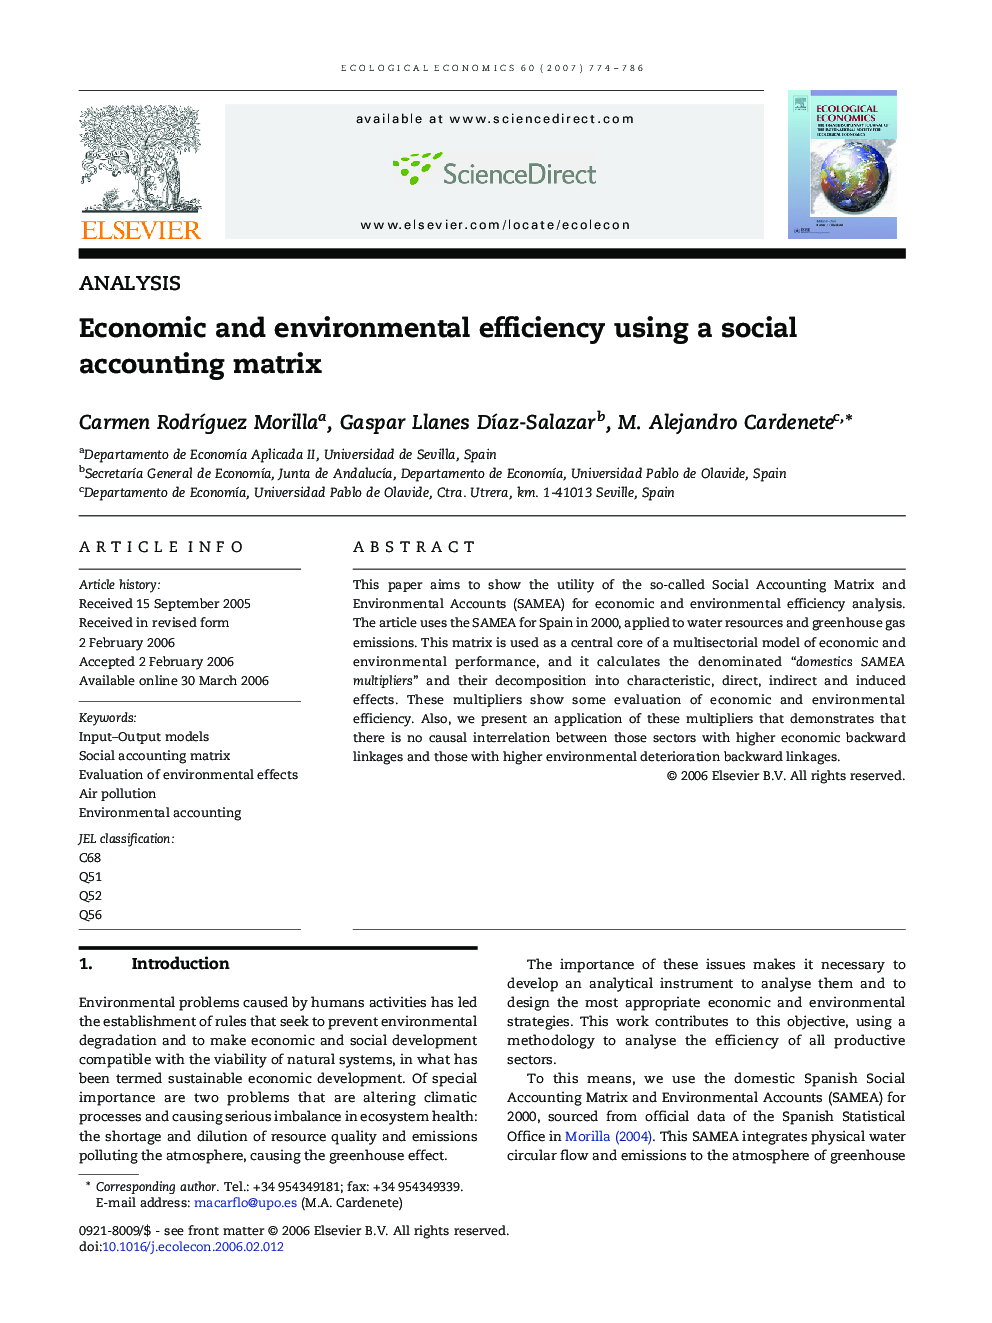 Economic and environmental efficiency using a social accounting matrix